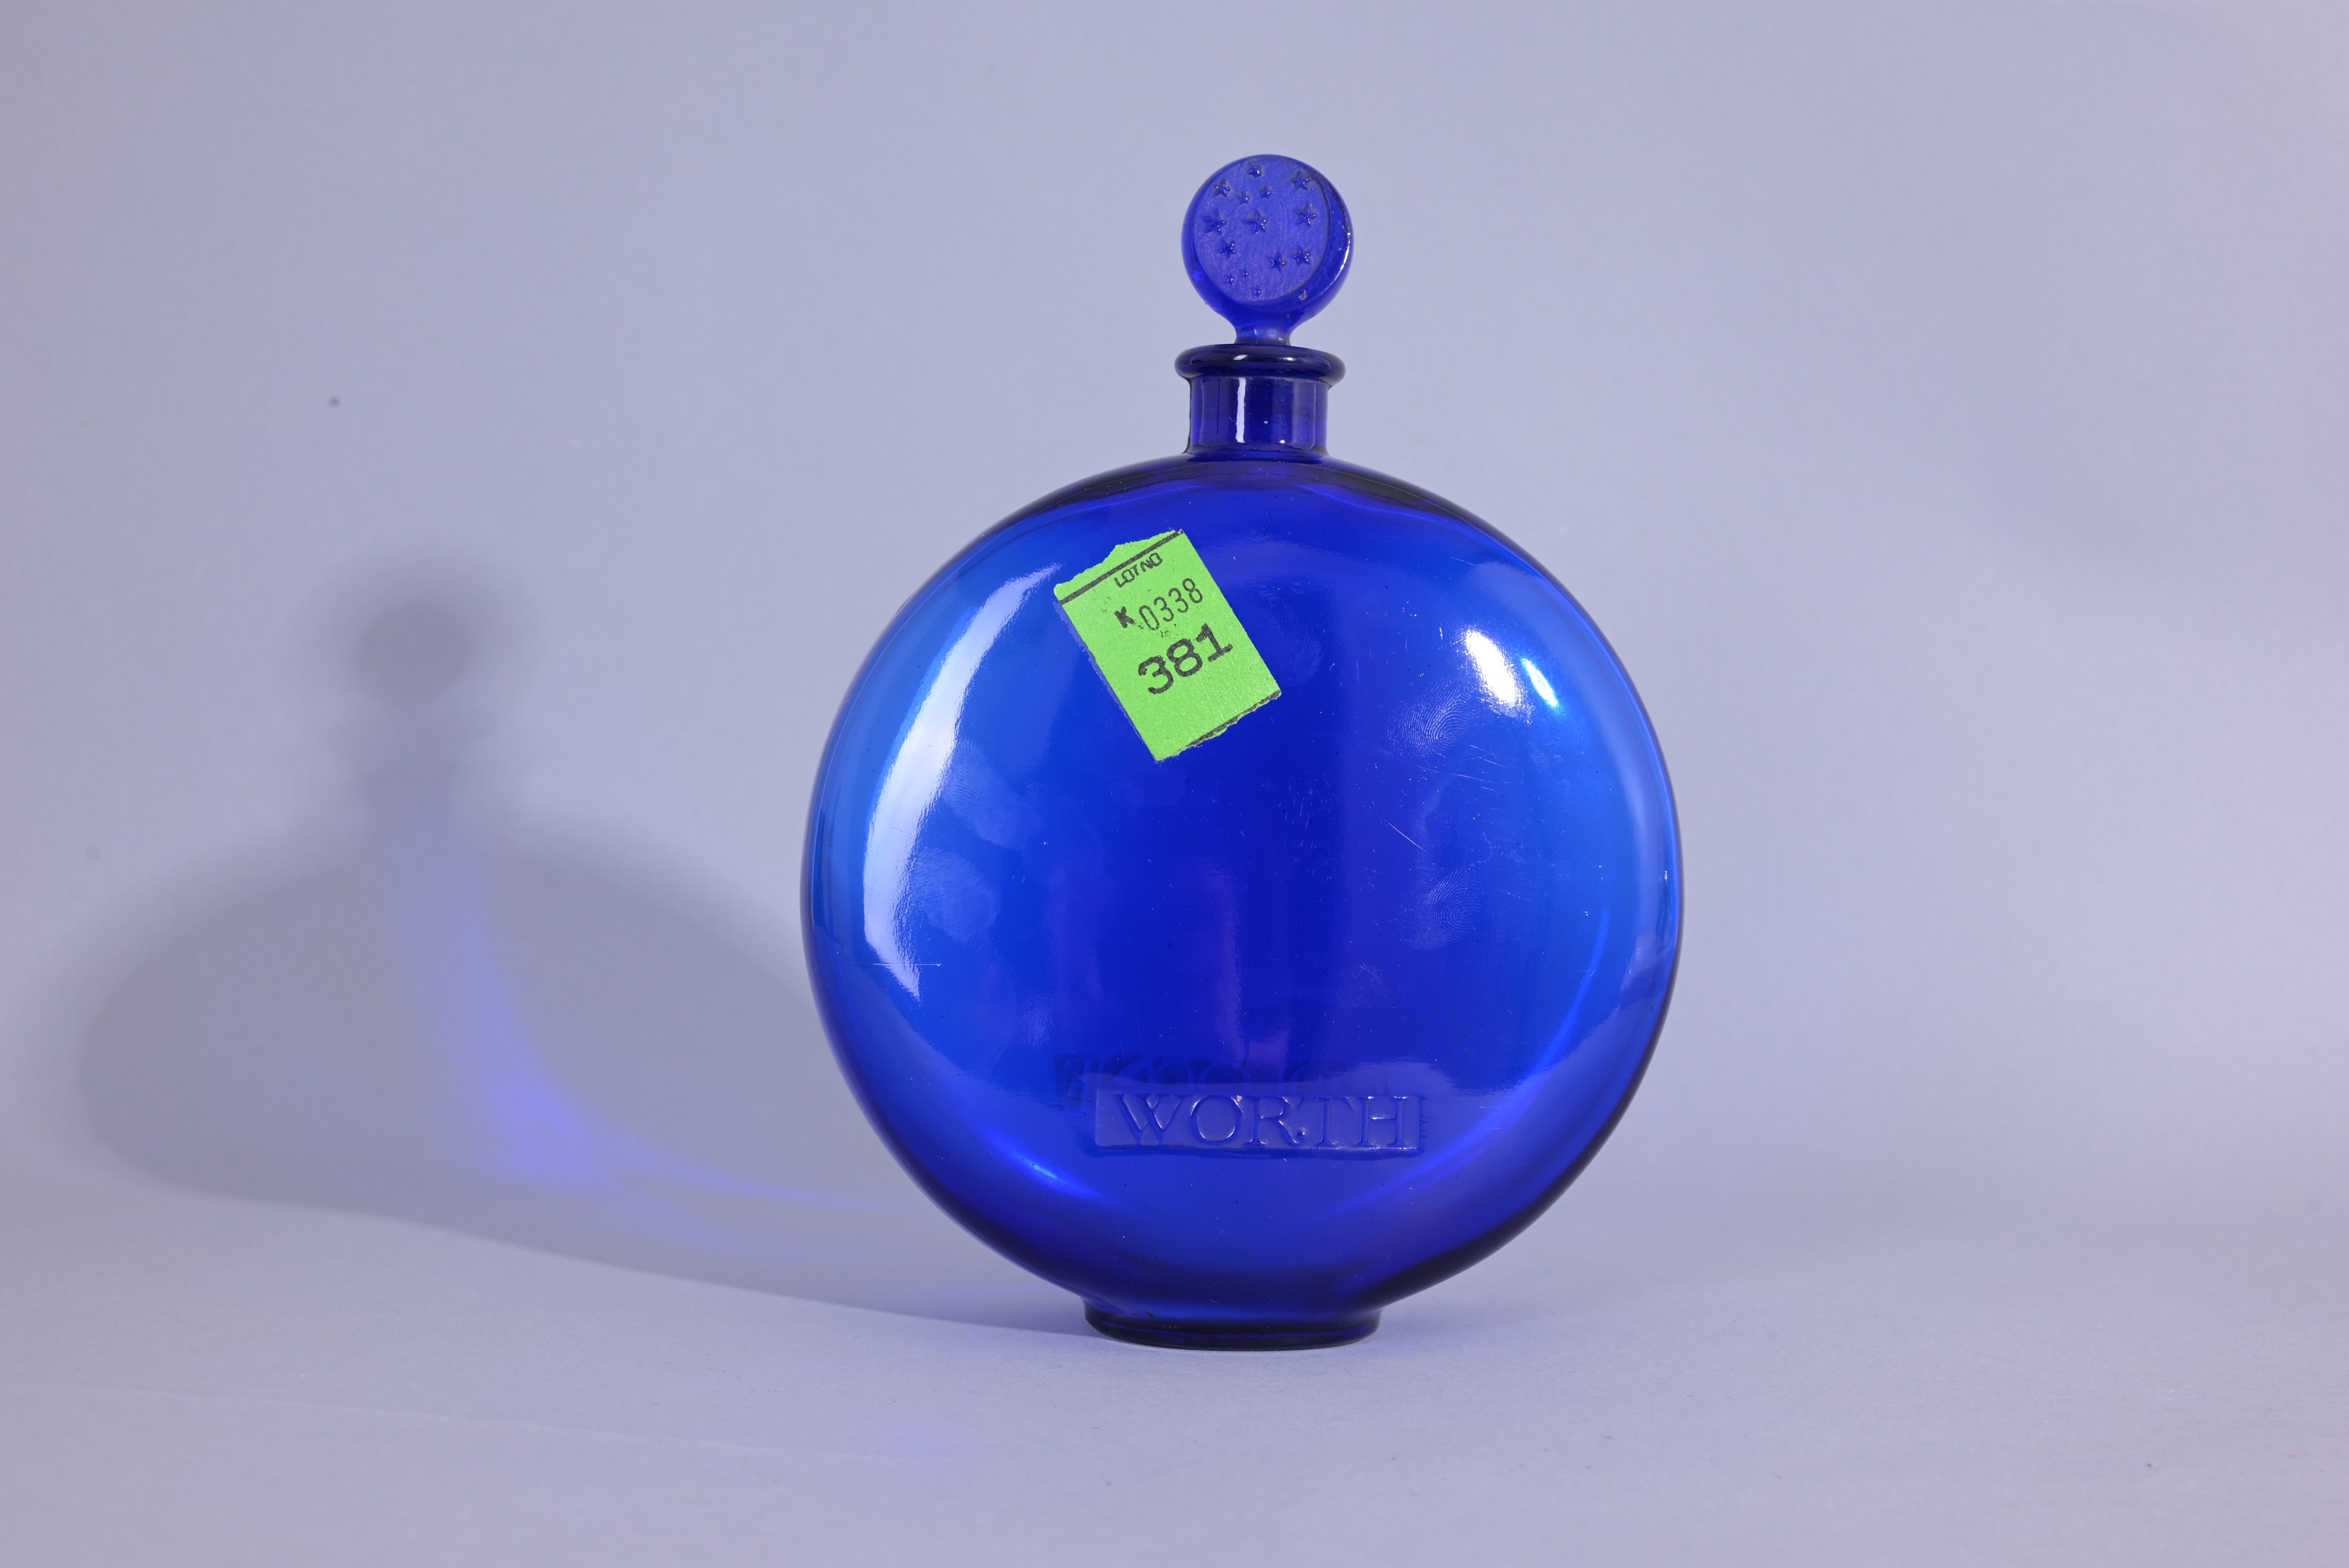 R. Lalique "Dans La Nuit" Glass Perfume Bottle - Image 2 of 7